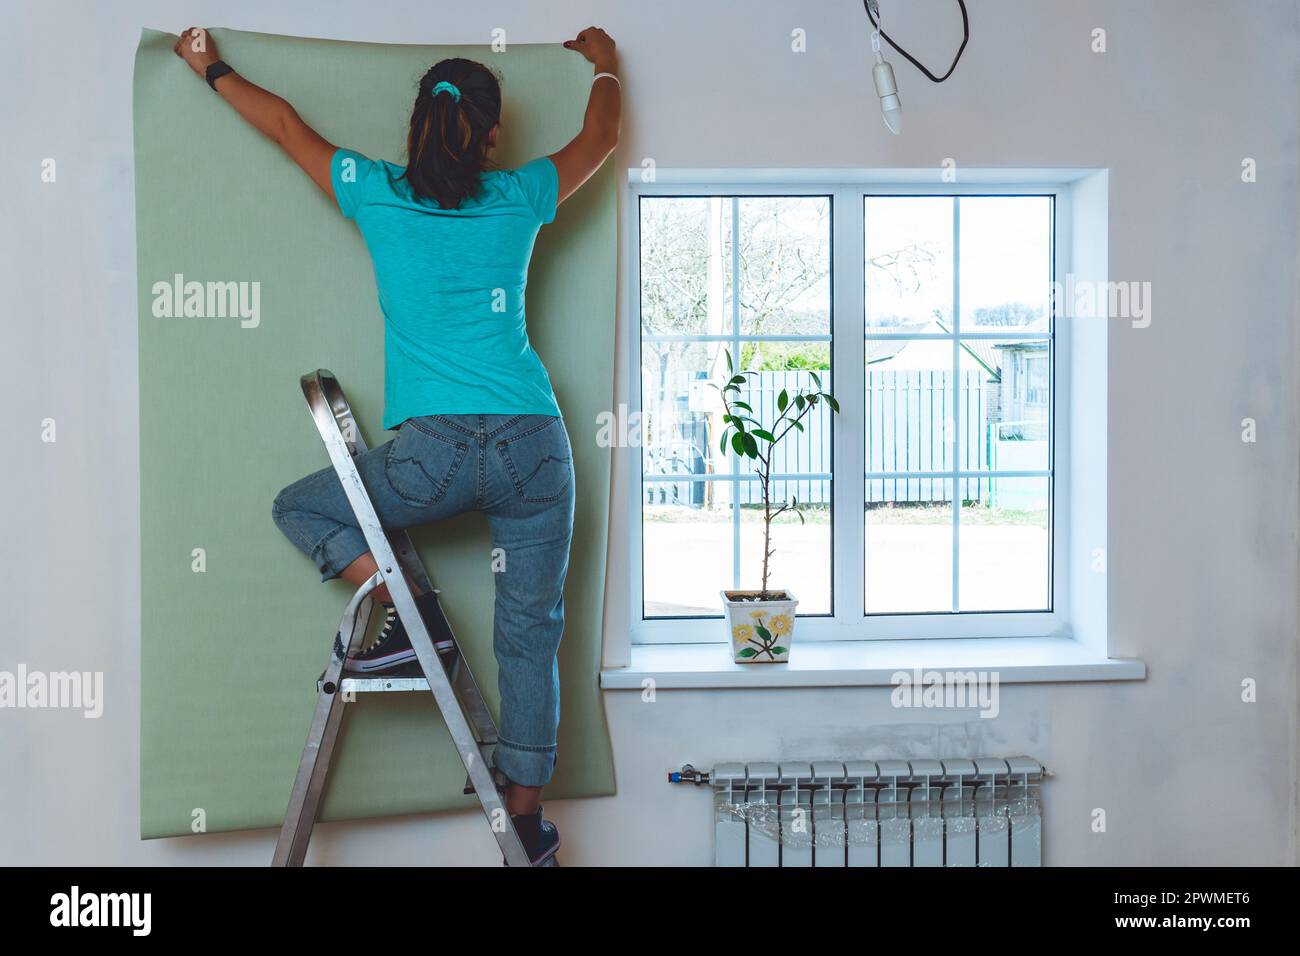 Frau in Jeans und türkisfarbenem T-Shirt, die auf einer Stehleiter steht und ein Stück Tapete hält. Renovierung und Verbesserung des Hauses. Stockfoto